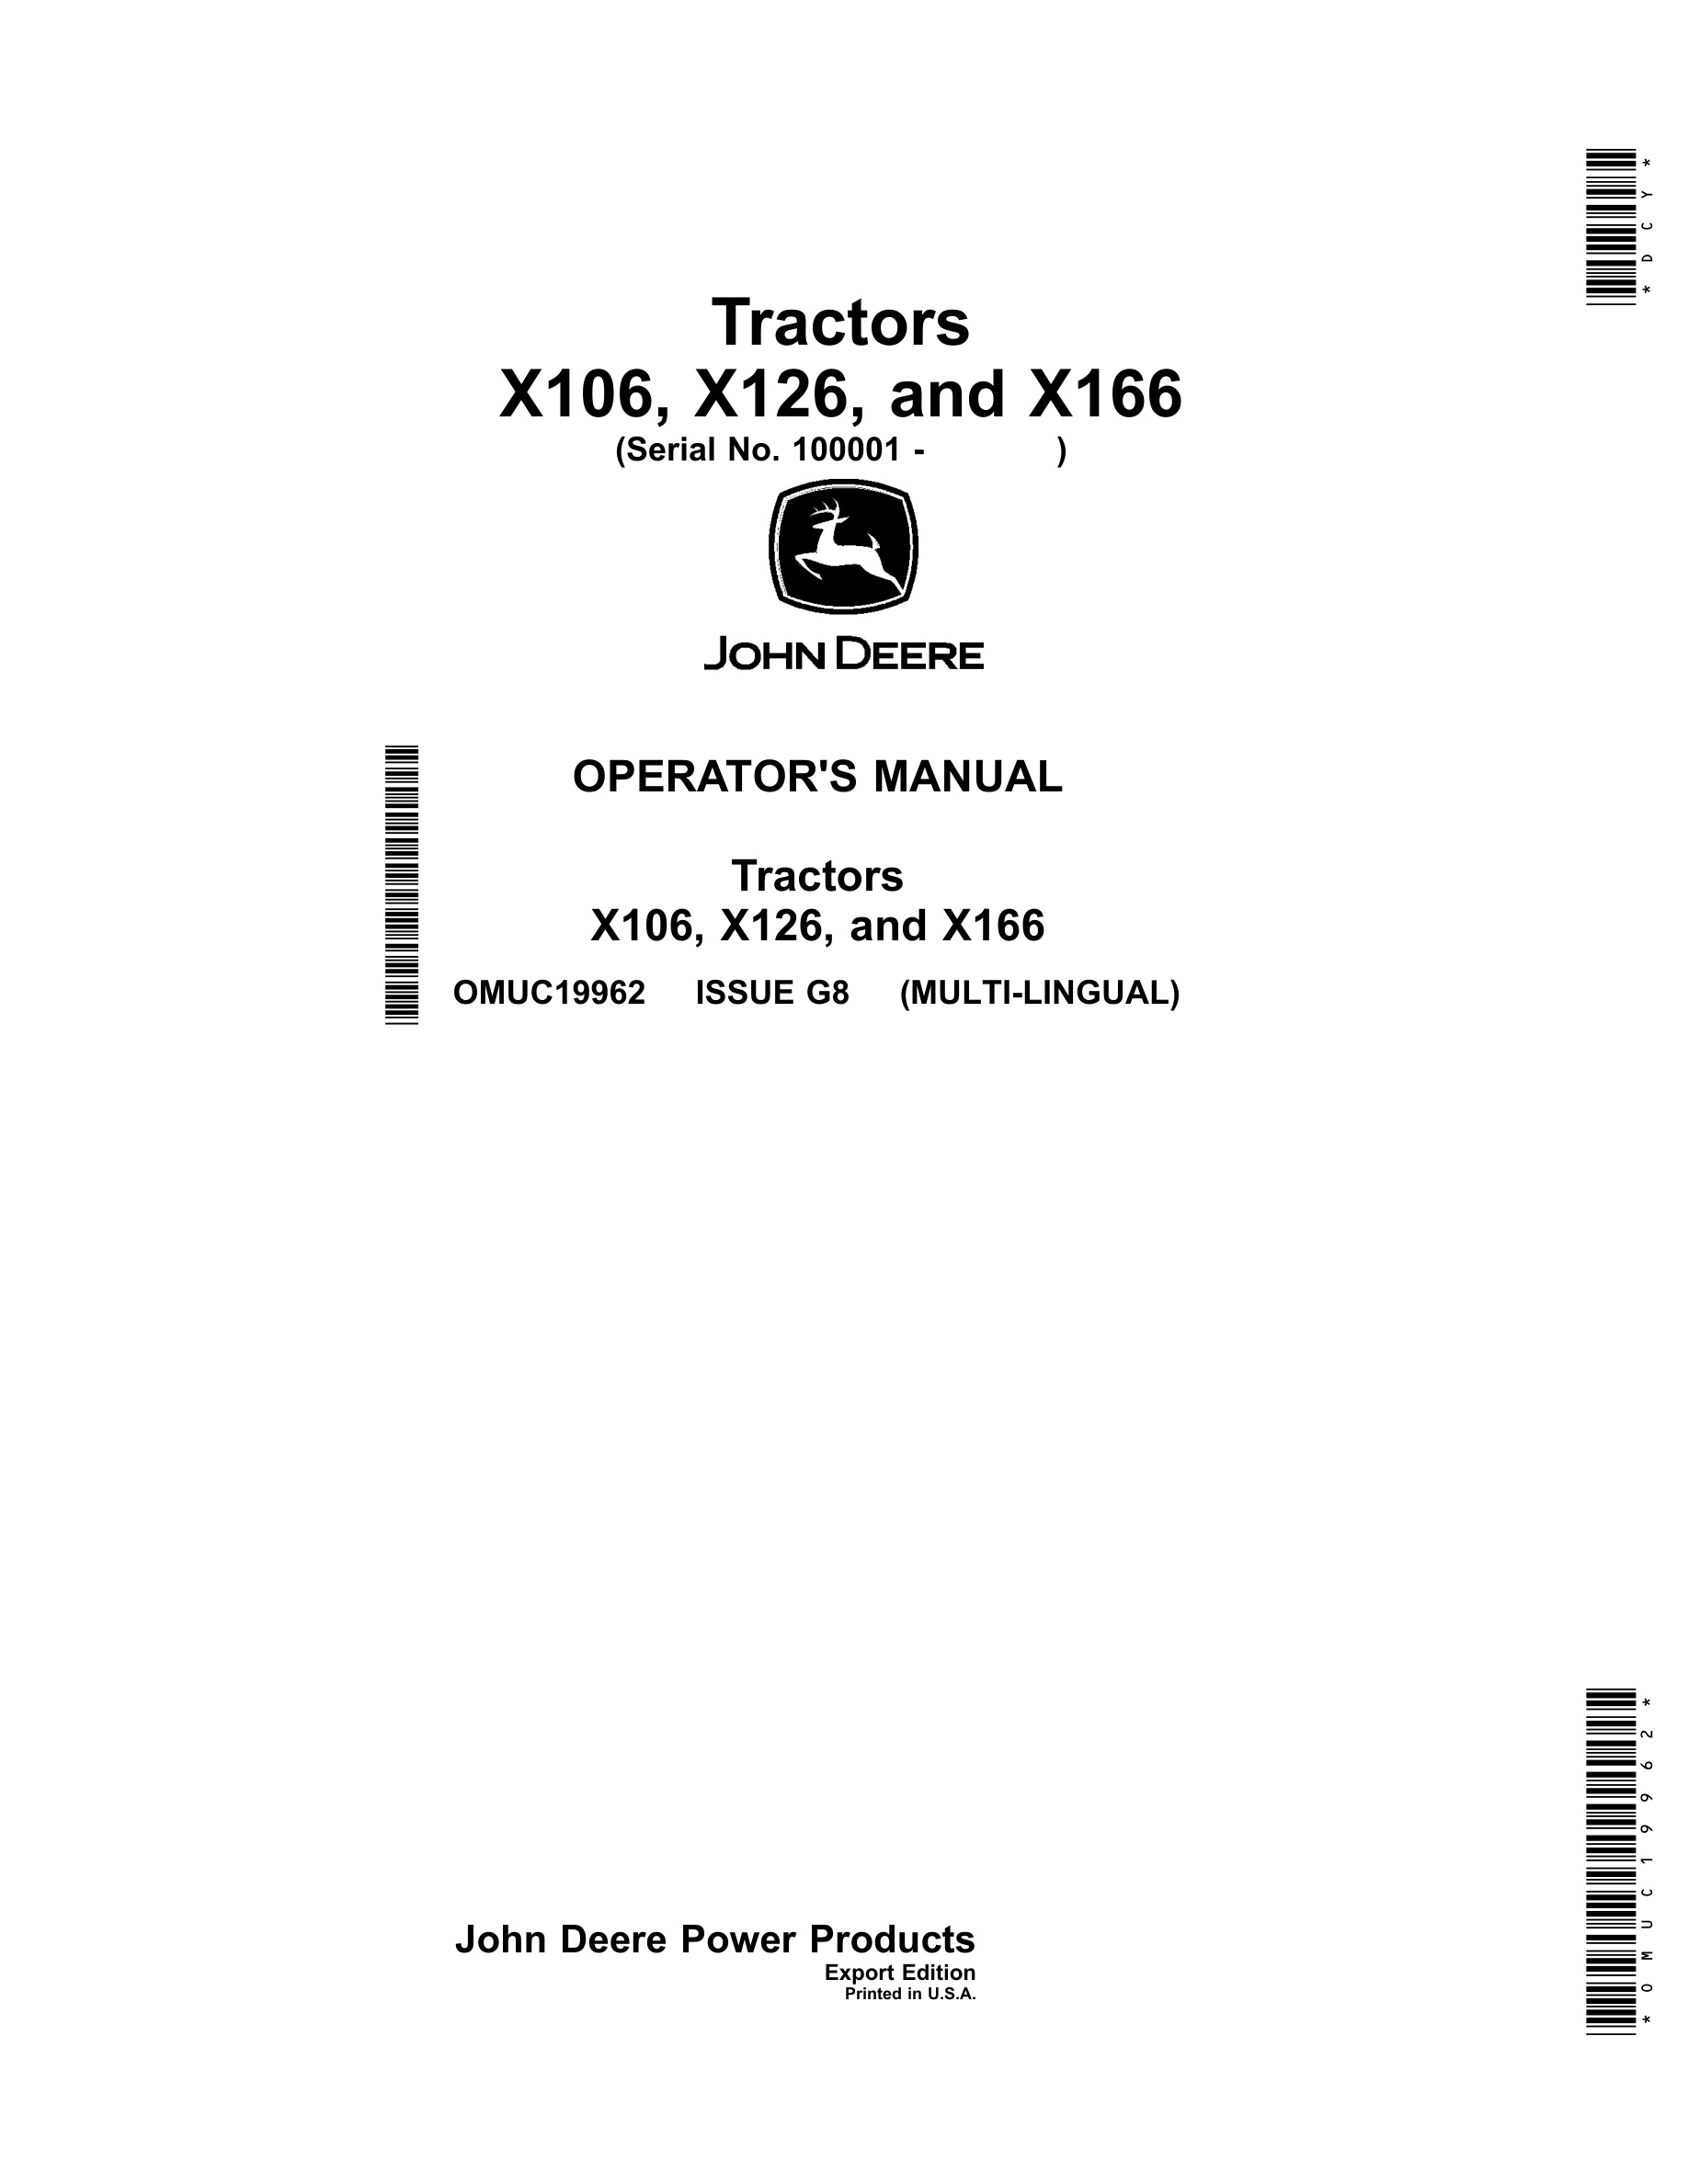 John Deere X106, X126, And X166 Tractors Operator Manuals OMUC19962-1